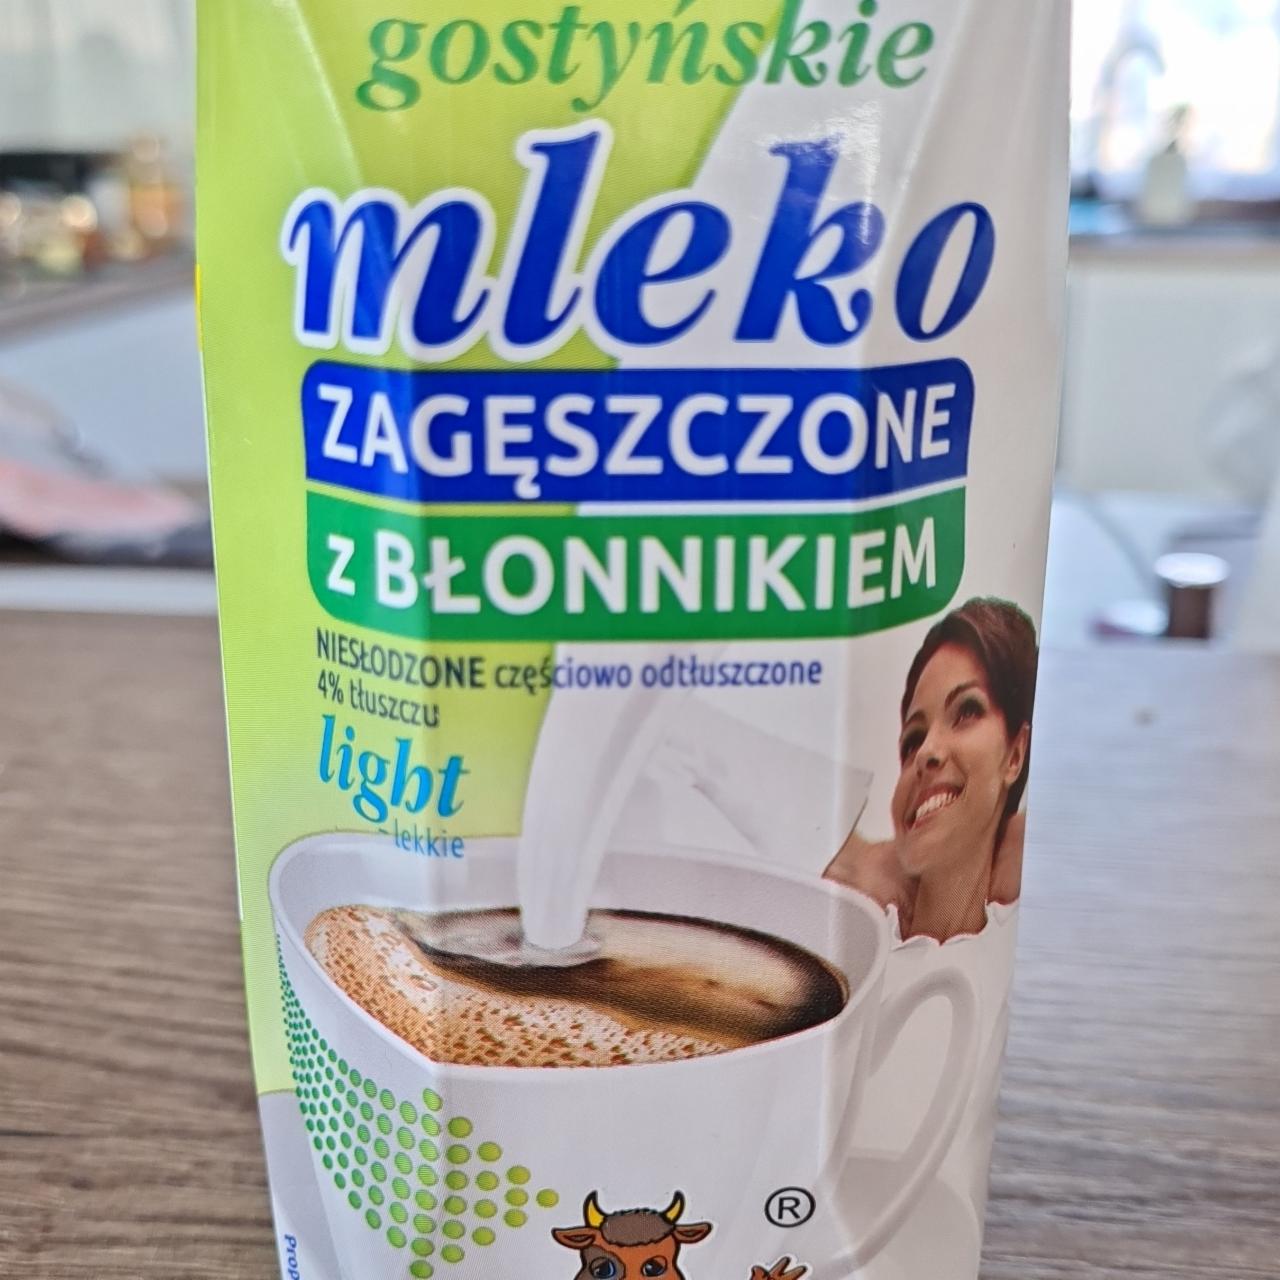 Zdjęcia - Gostyńskie mleko zagęszczone z błonnikiem light SM Gostyń